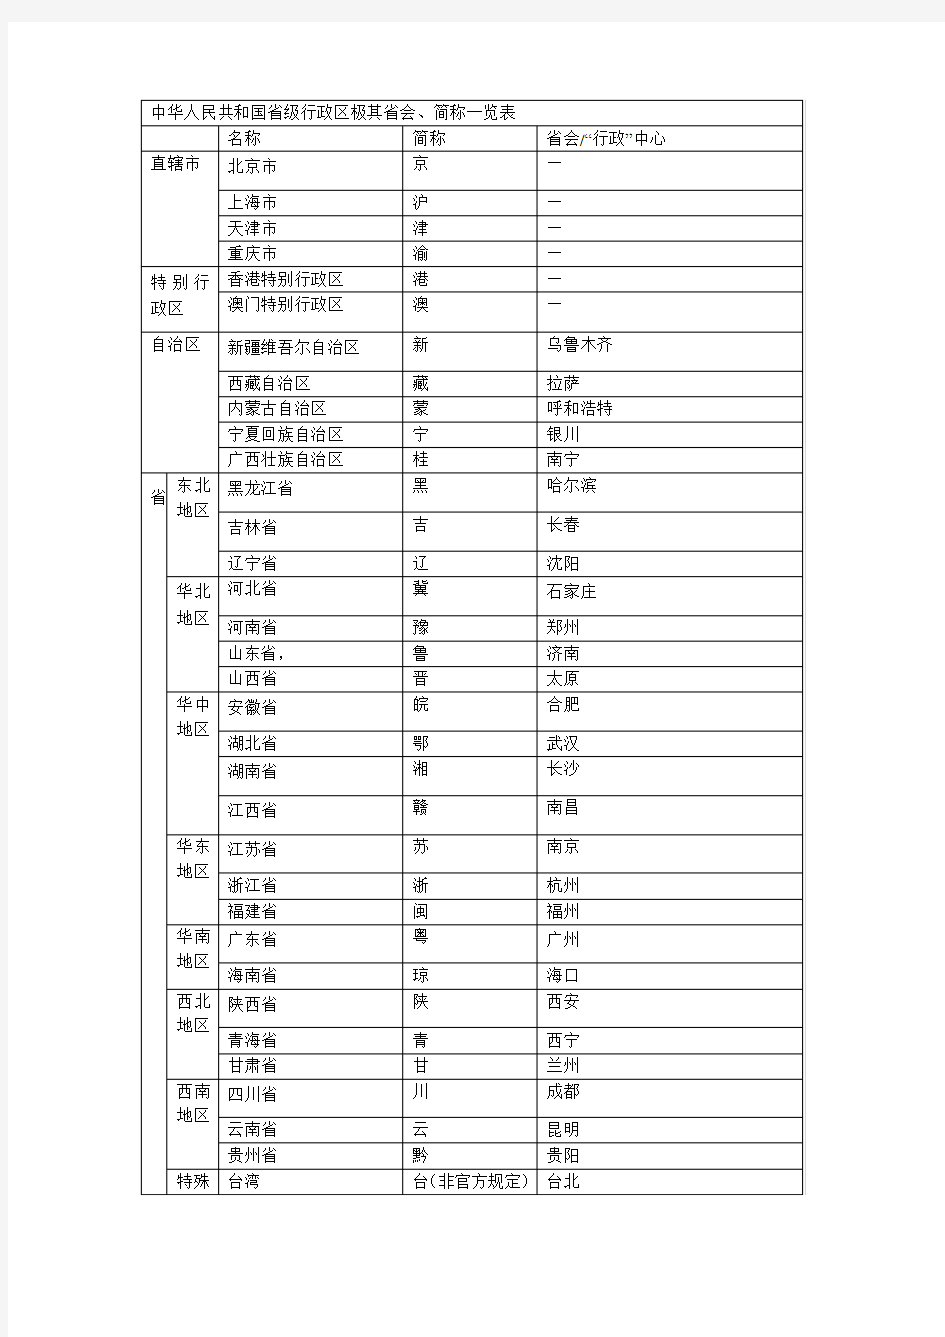 中华人民共和国省级行政区极其省会、简称一览表